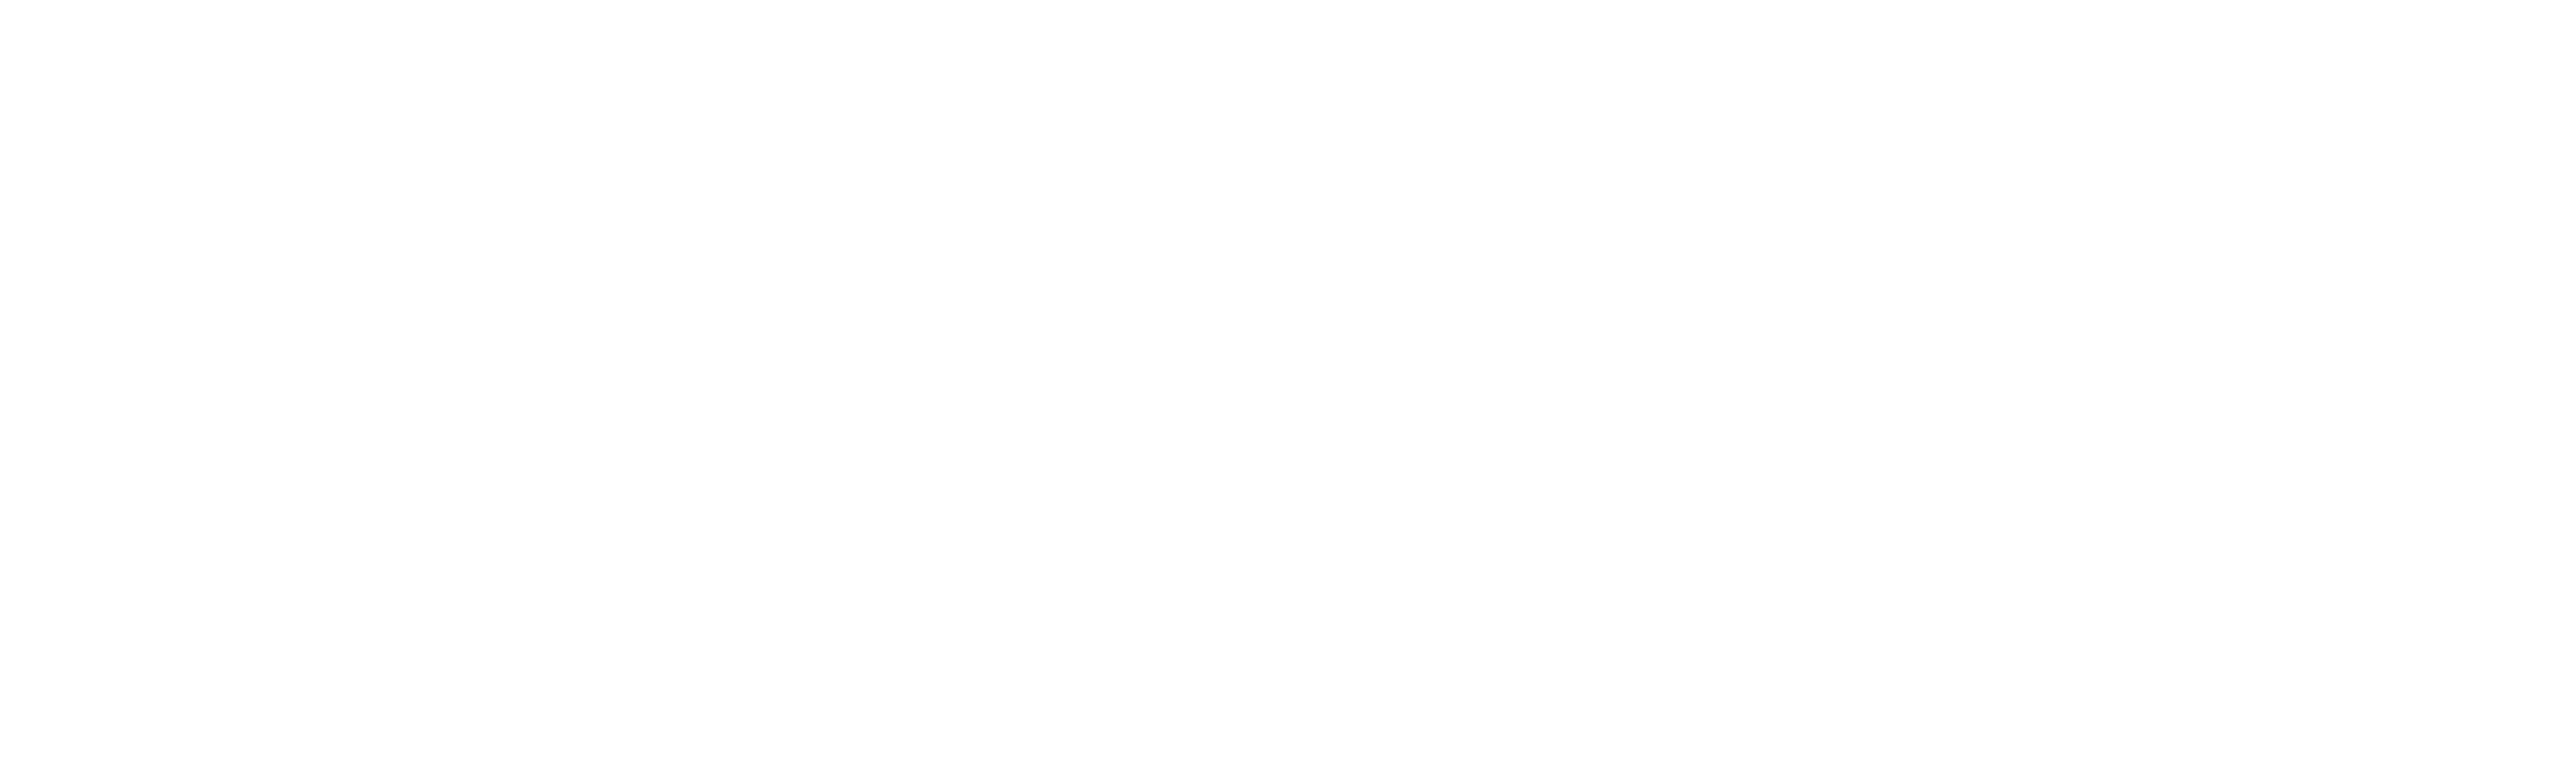 MuTech